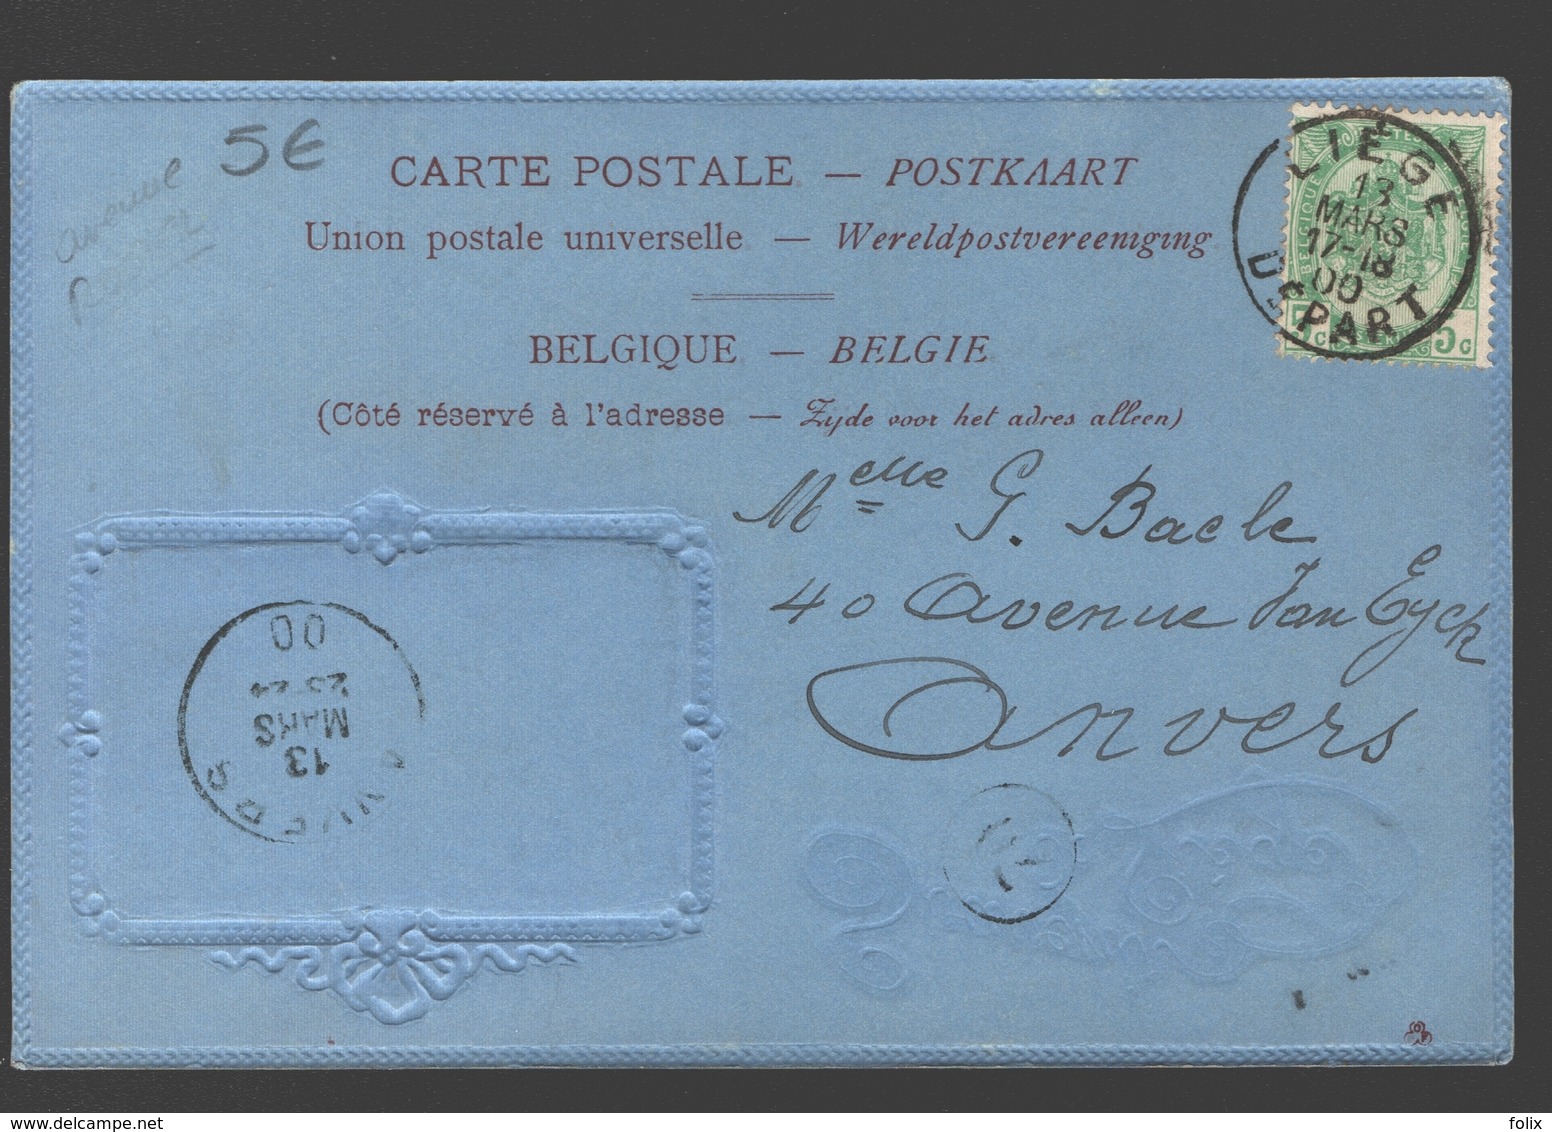 Liège - Souvenir De Liège - 1900 - Carton Bleu / Blauw Karton - Reliëf - éd. Maréchal-Ory, Liège - Luik